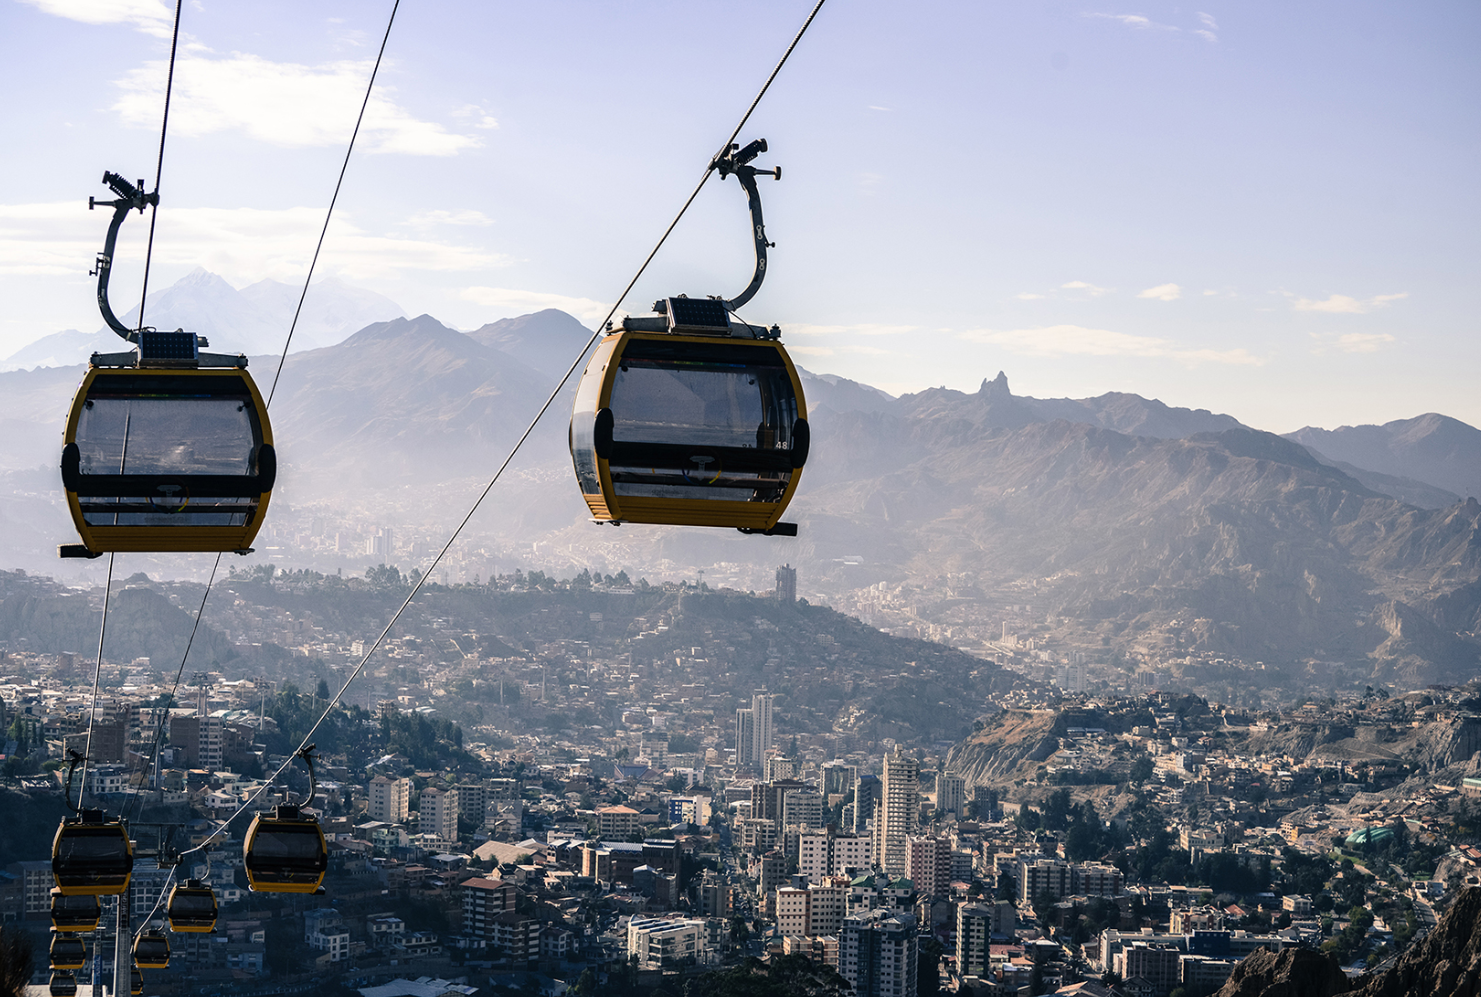 Rund um die Welt erobern, wie hier in La Paz, urbane Seilbahnen die Städte – in Linz hakt’s (Bild: Doppelmayr)